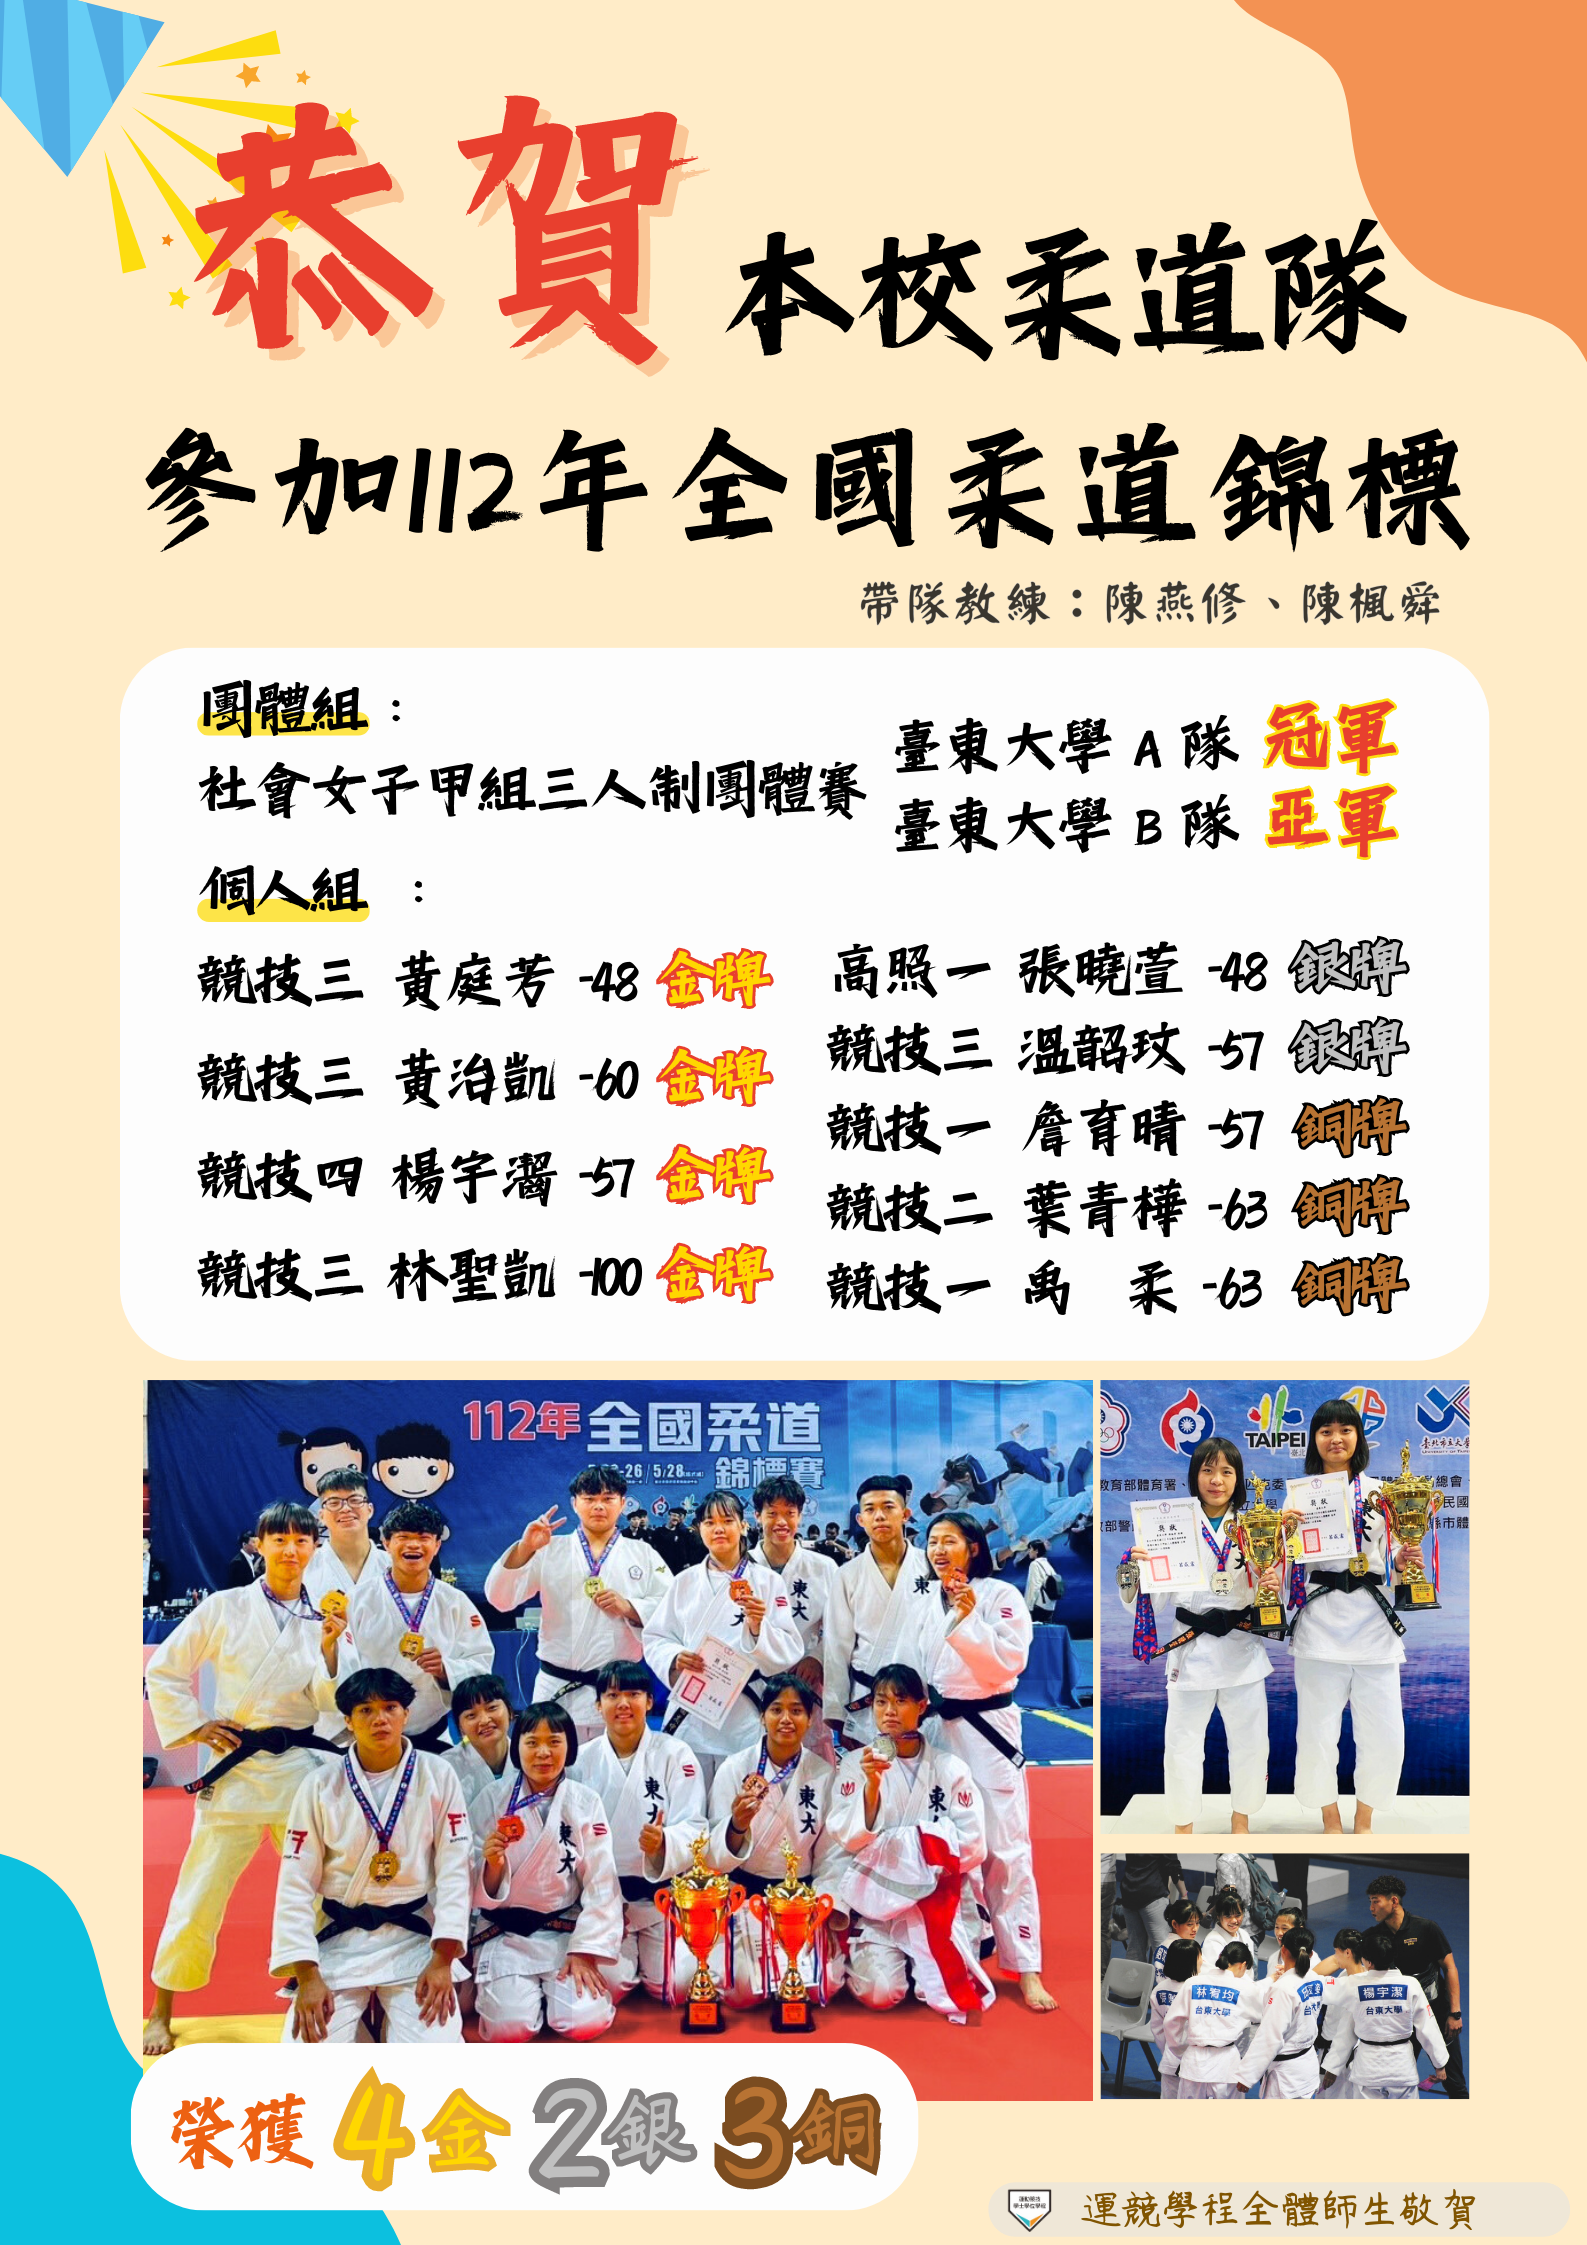 柔道隊參加112年全國柔道錦標賽榮獲佳績